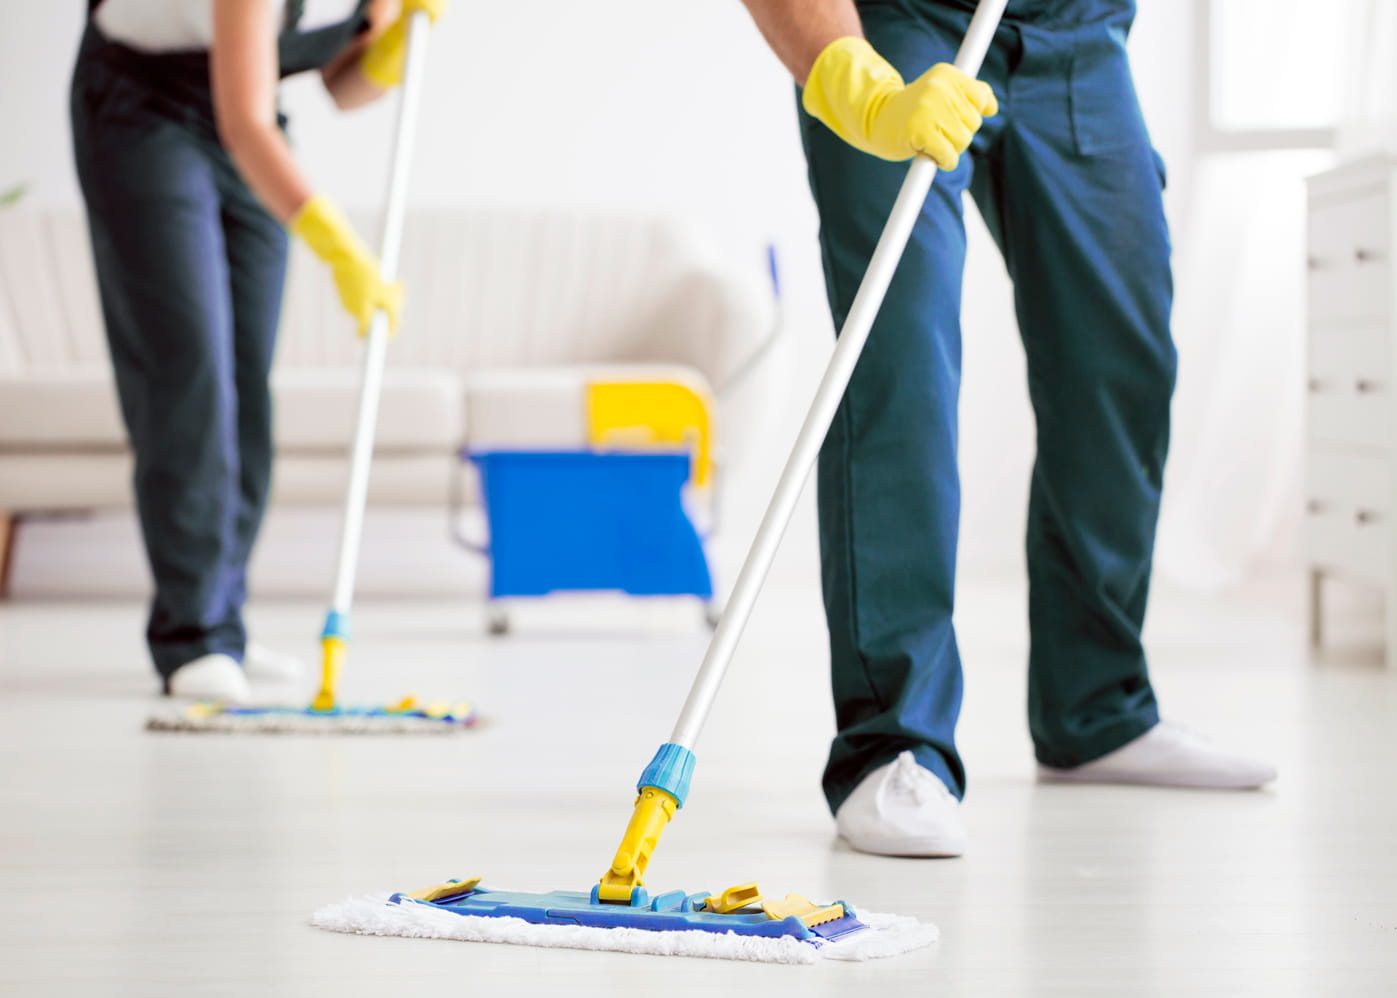 Des employés de l'Entreprise nettoient le sol pour une propreté et une hygiène impeccable